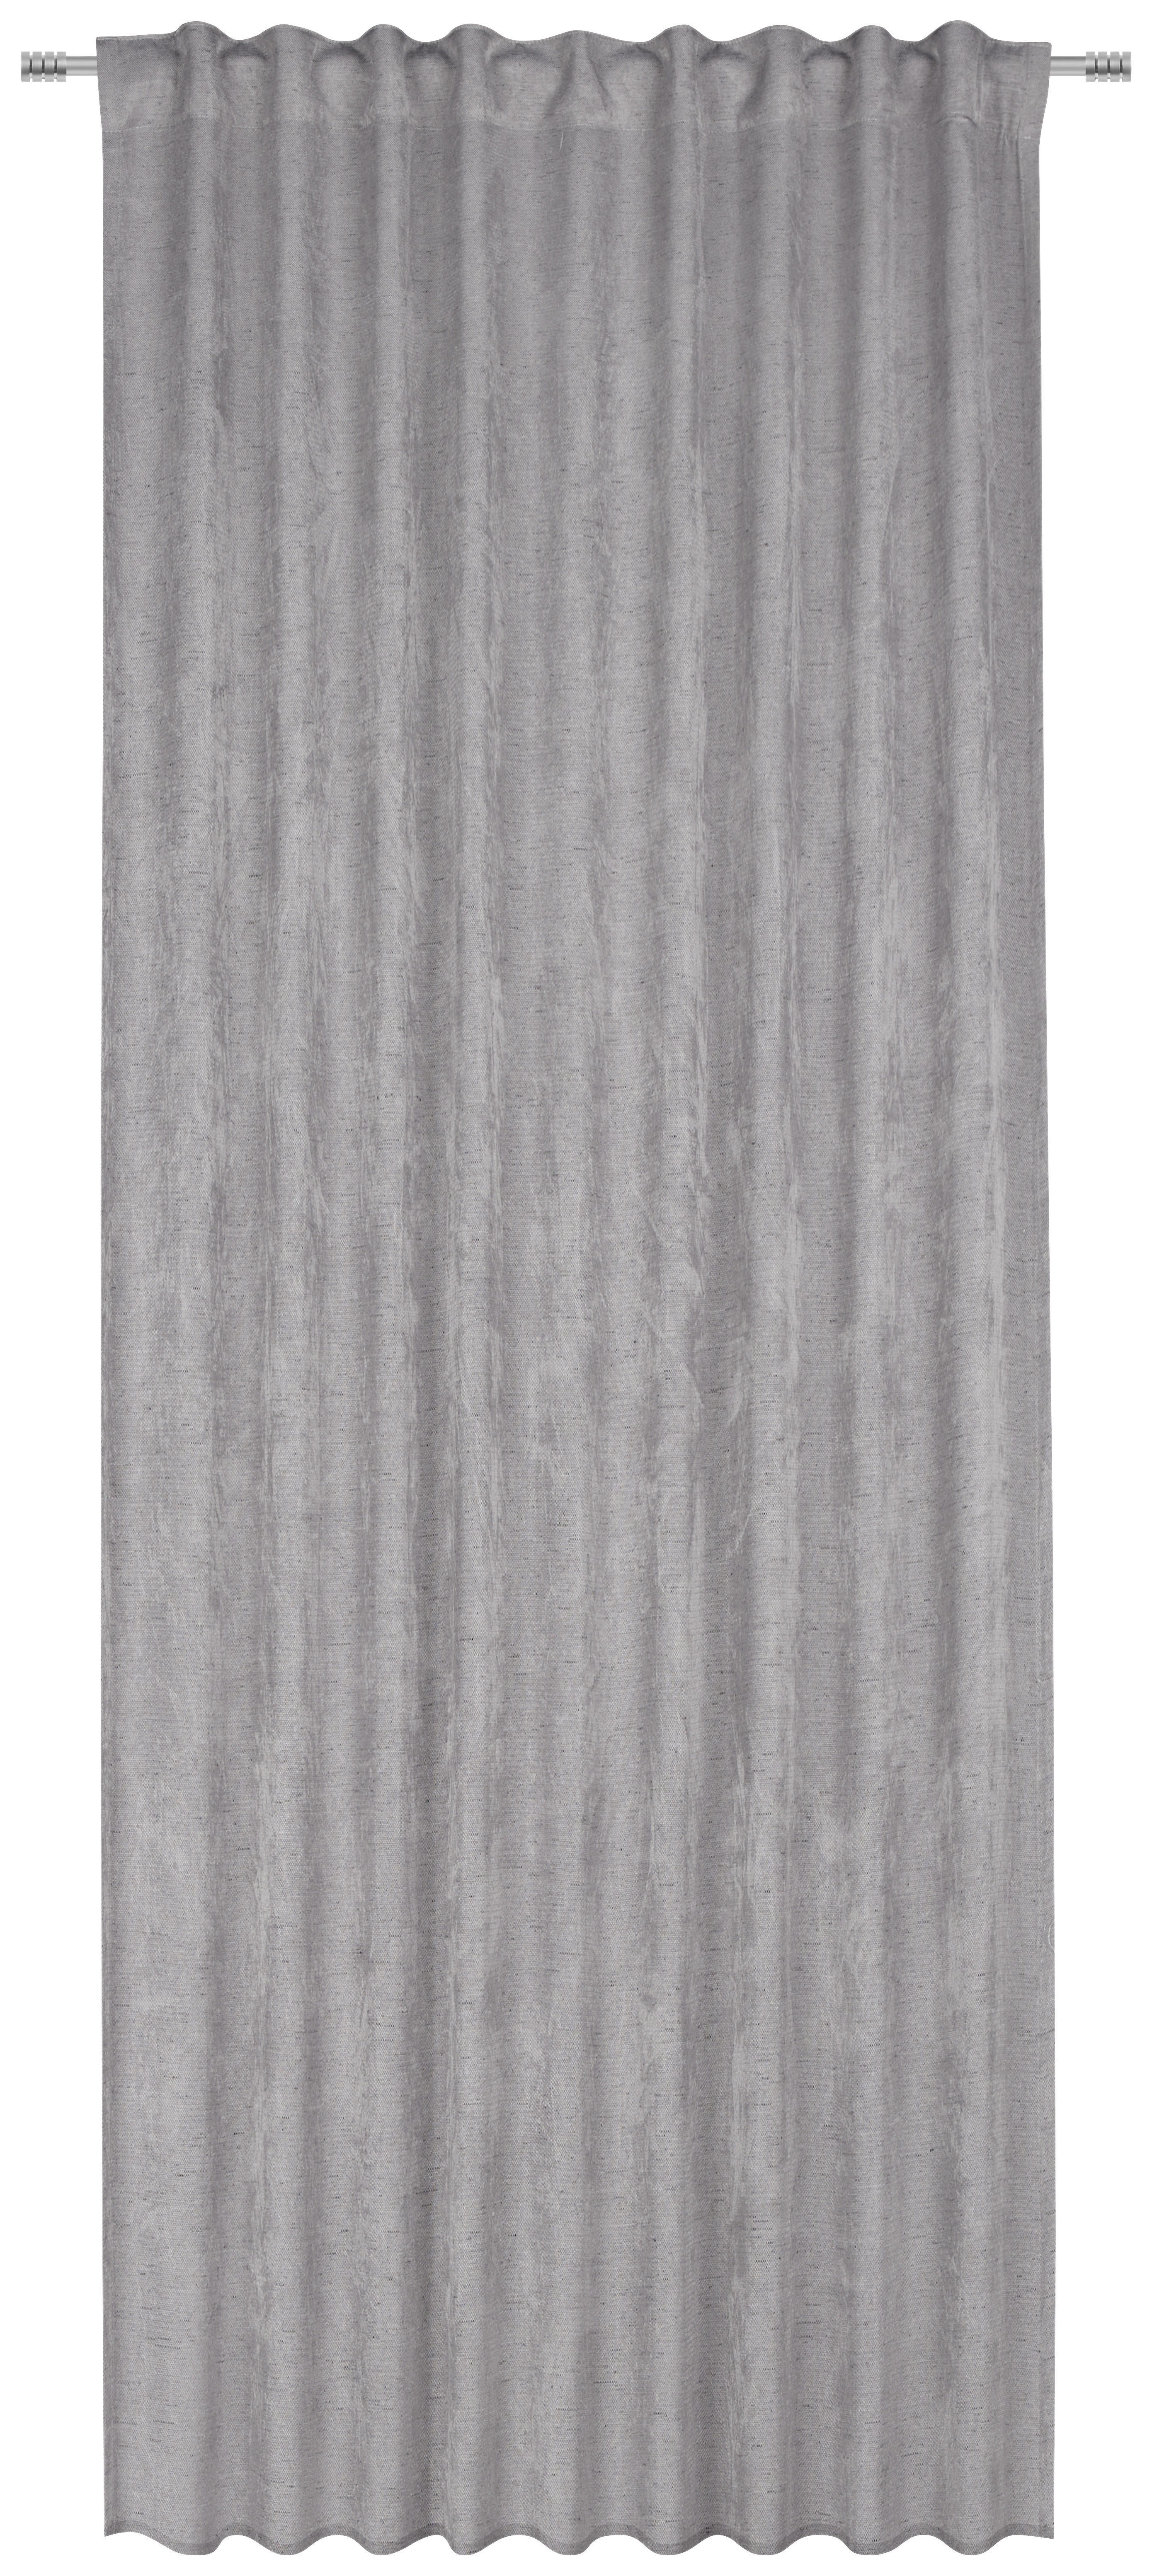 GARDINLÄNGD mörkläggning  - grå, Klassisk, textil (135/245cm) - Esposa